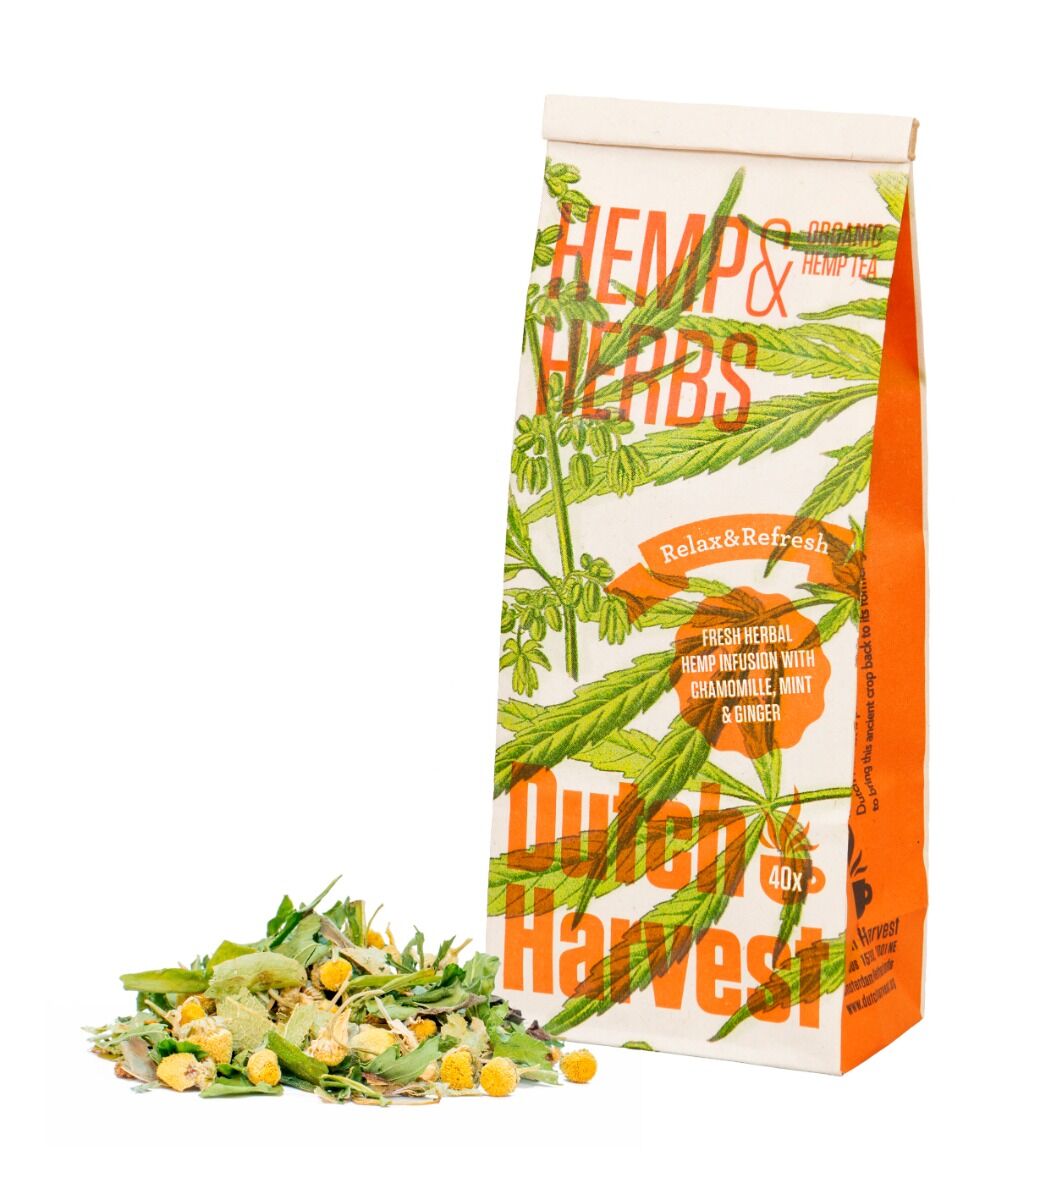 Dutch Harvest Hemp & Herbs - Hennep & Kruidenmix thee 40 gram - Biologisch - Dutch Harvest losse thee